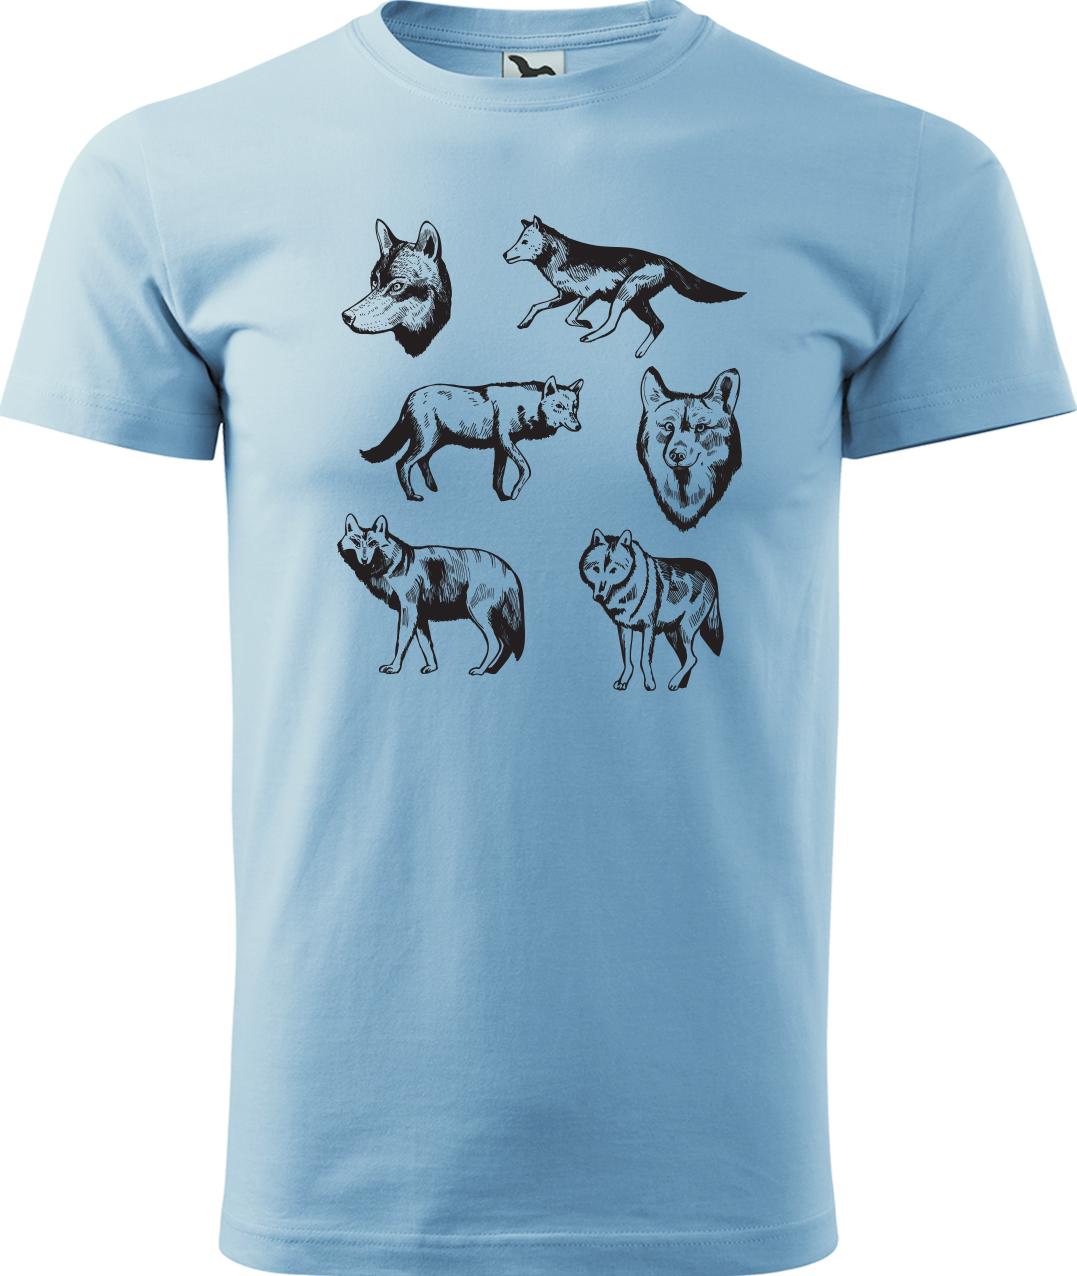 Pánské tričko s vlkem - Vlci Velikost: M, Barva: Nebesky modrá (15), Střih: pánský